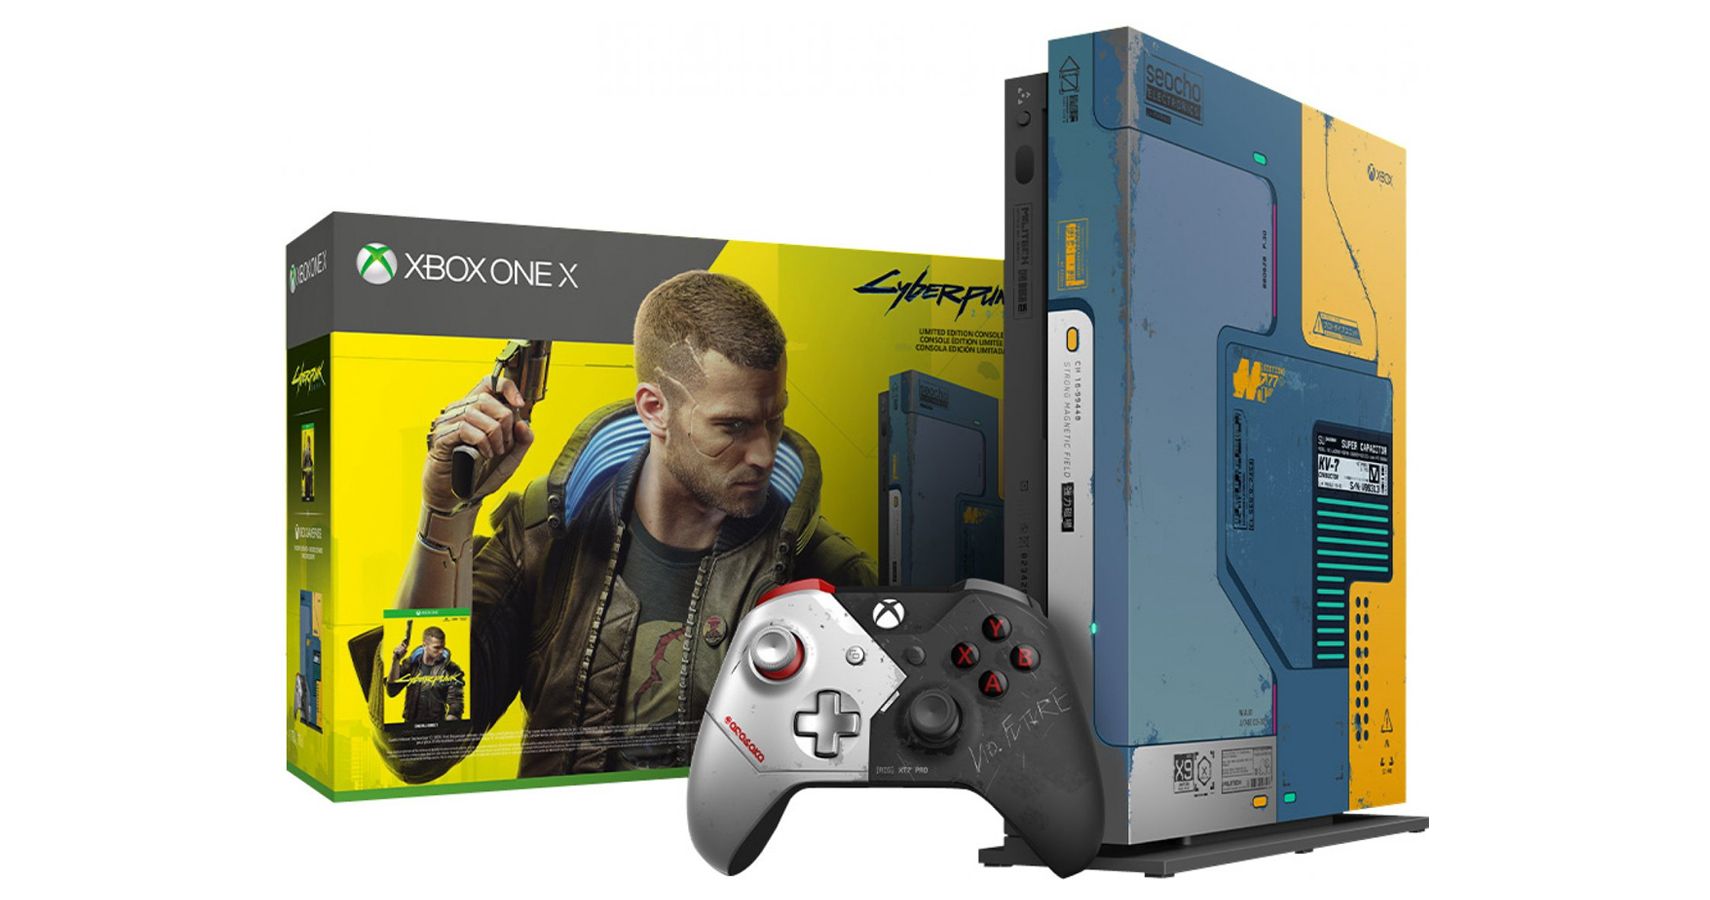 Xbox One X Cyberpunk 2077 limited edition